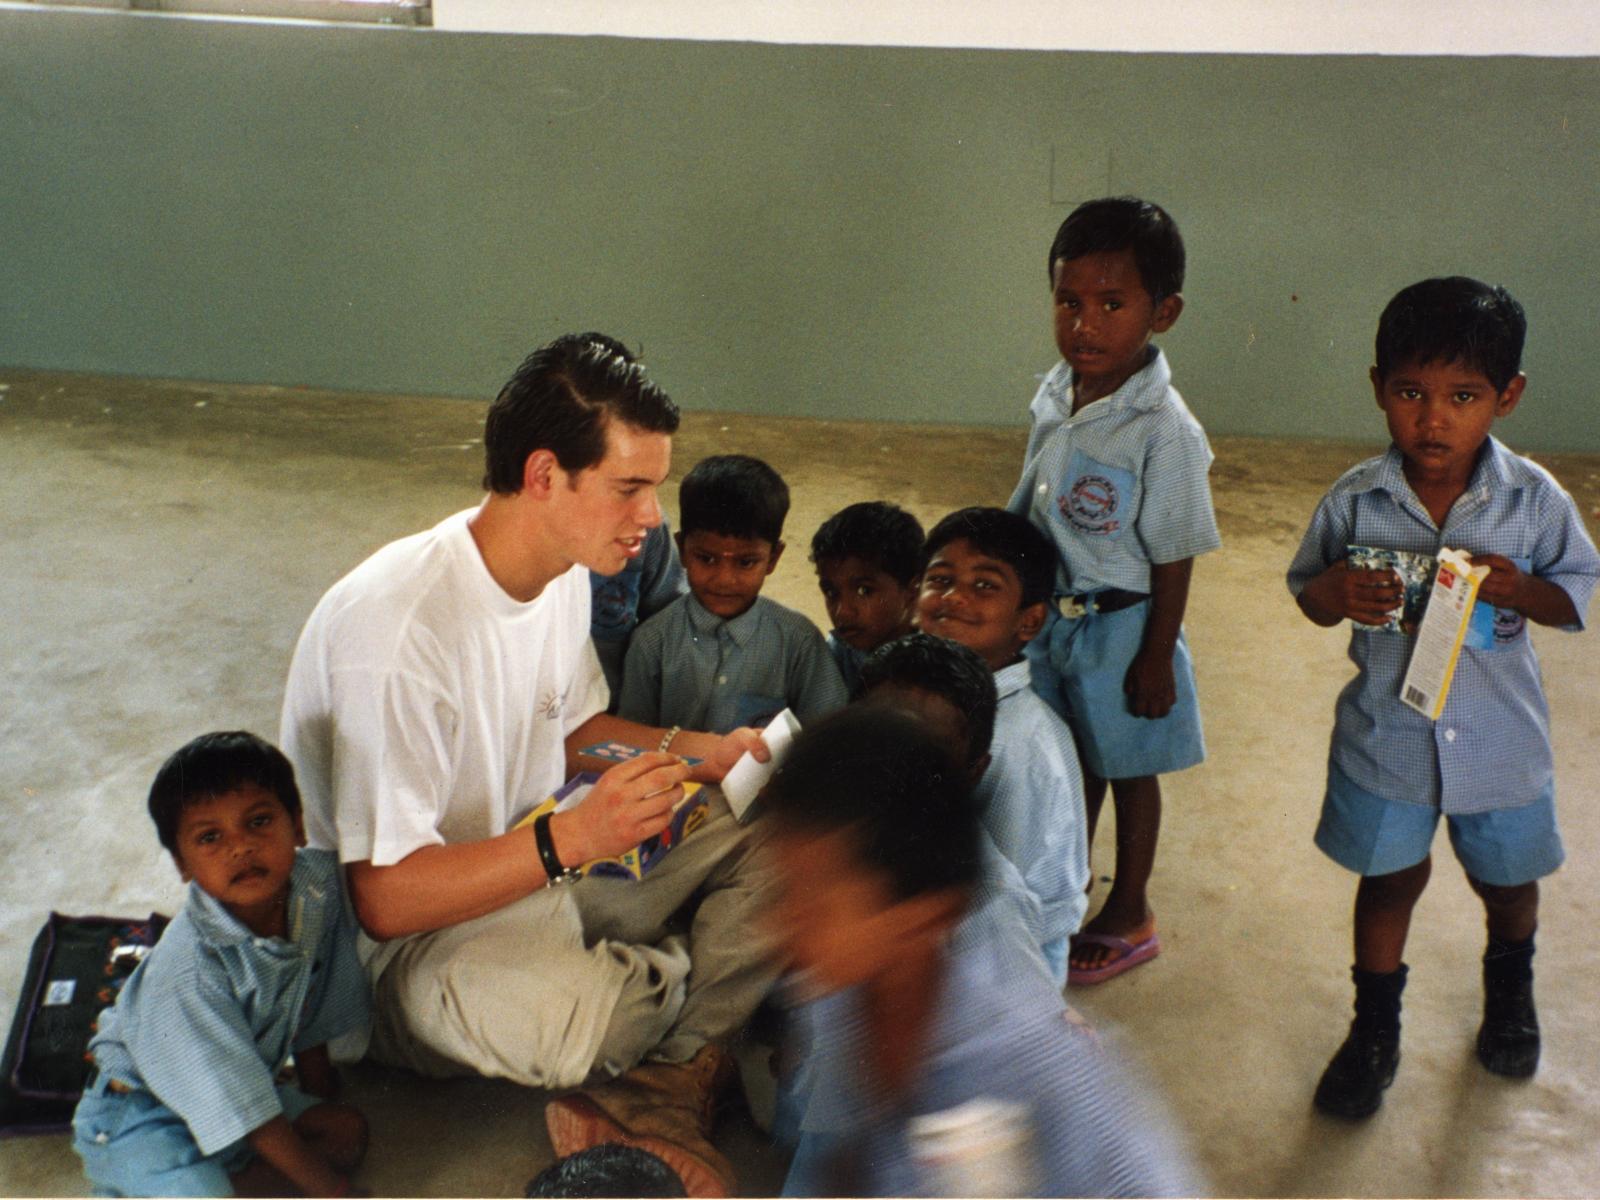 Le Prince Félix en voyage humanitaire en 2002